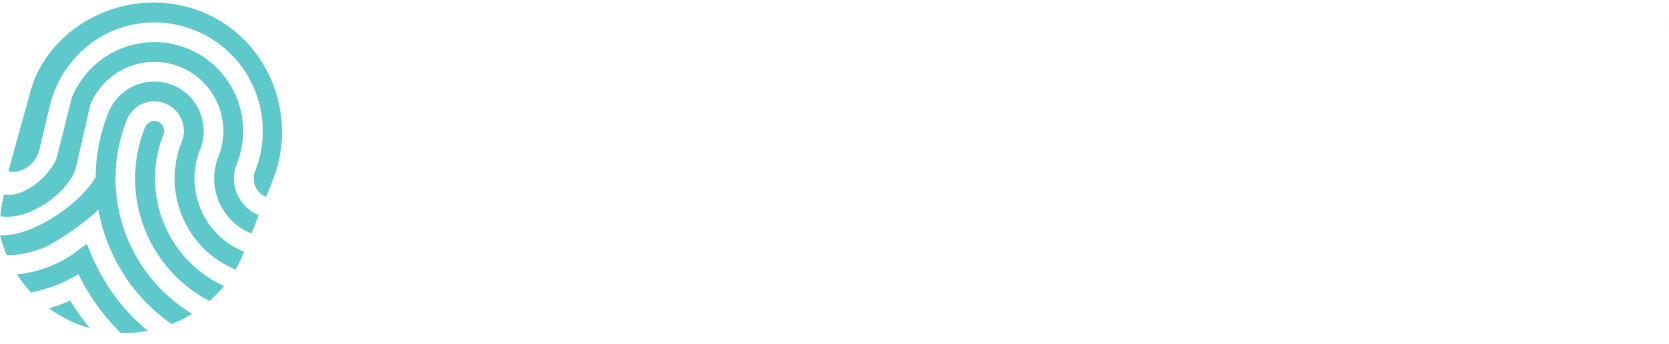 Cywareness-be-aware-logo-light 1